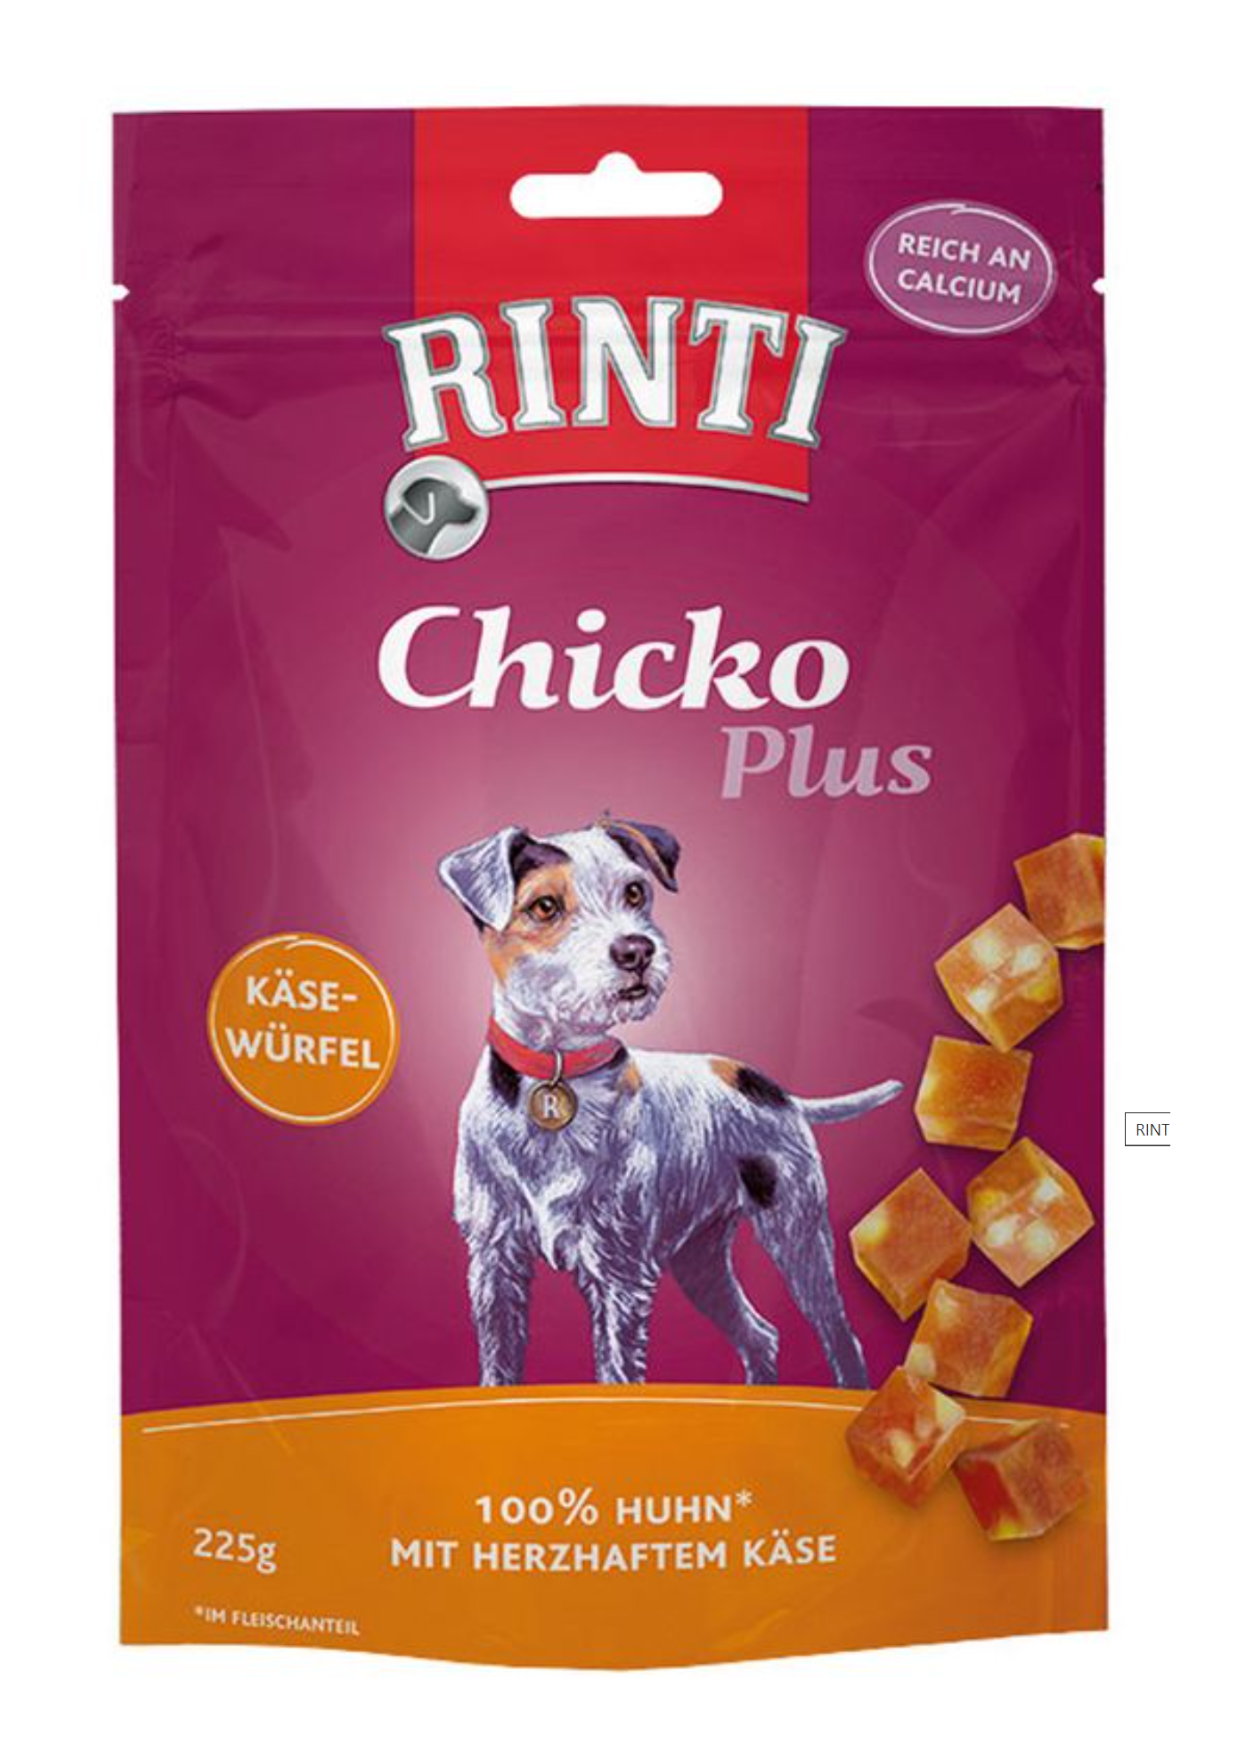 Rinti Chicko Plus - Huhn mit Käse Würfel